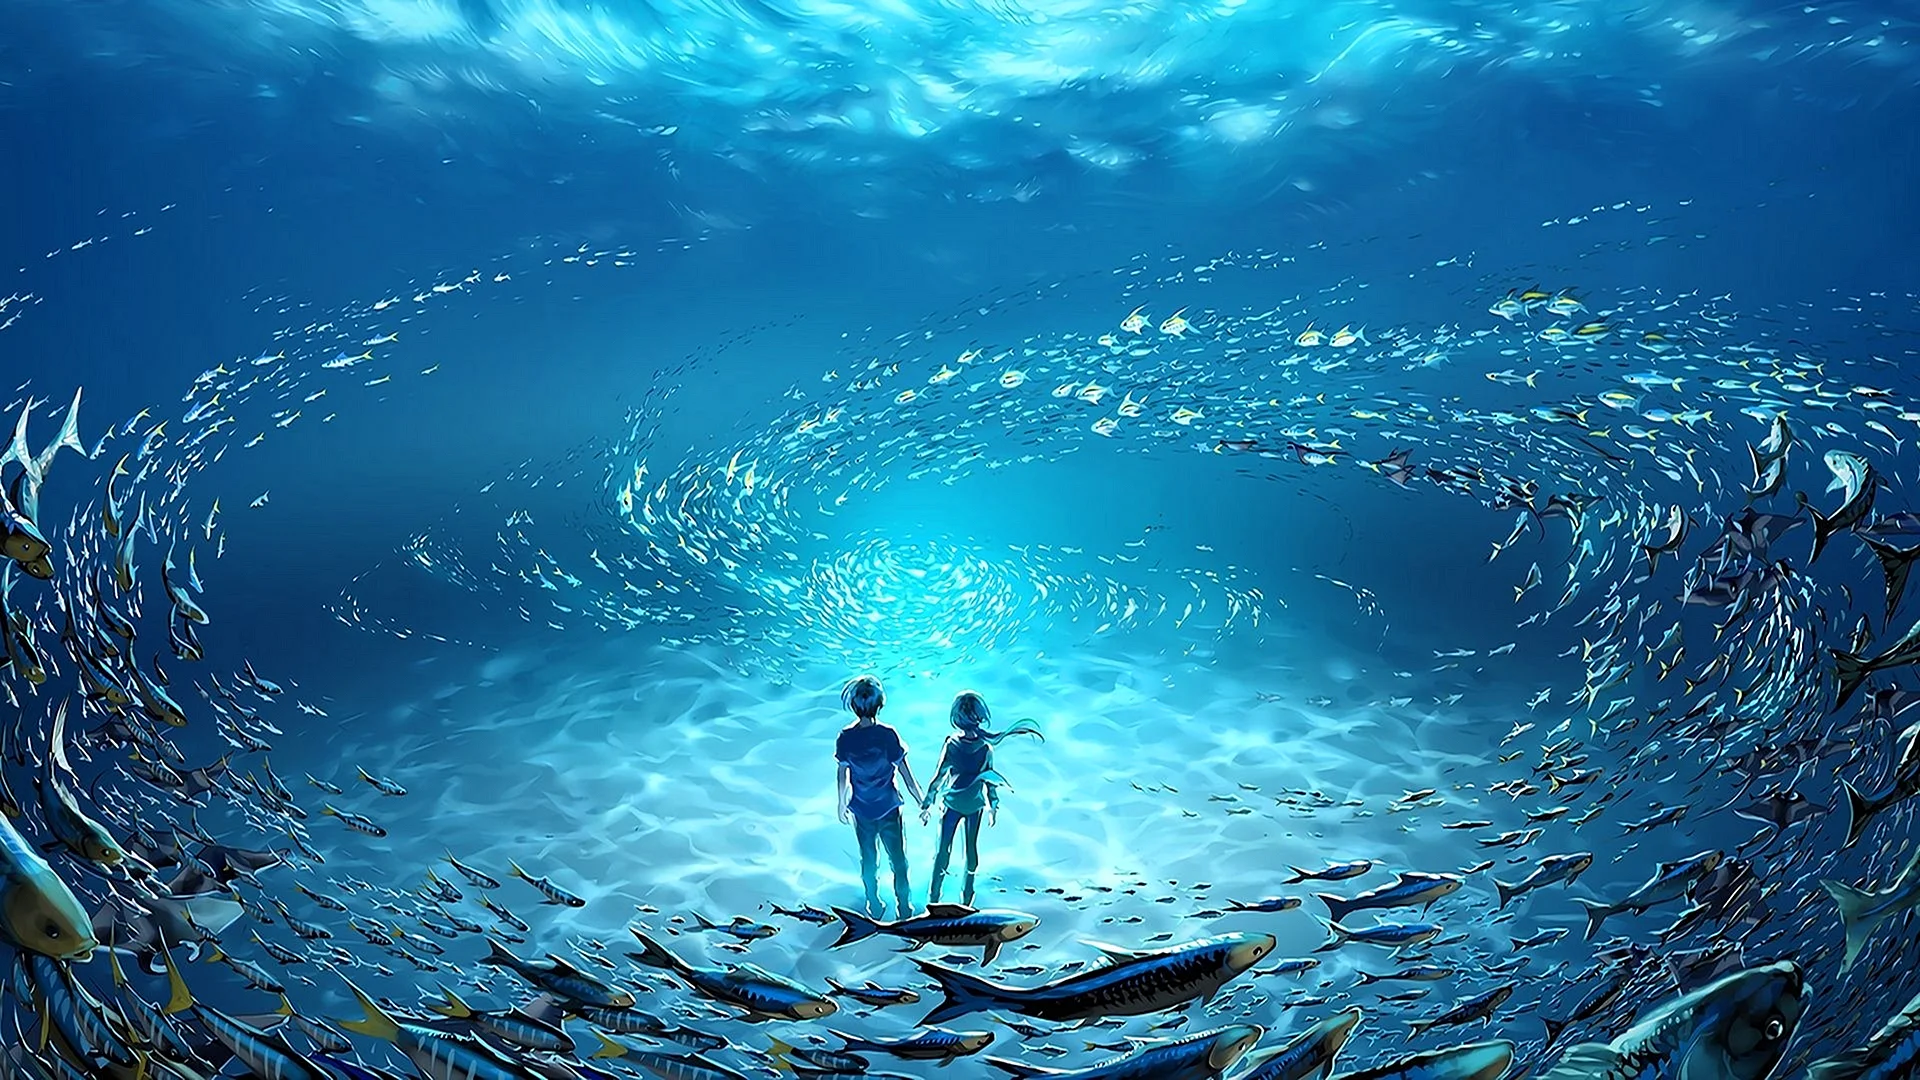 Ocean Fantasy Art Wallpaper